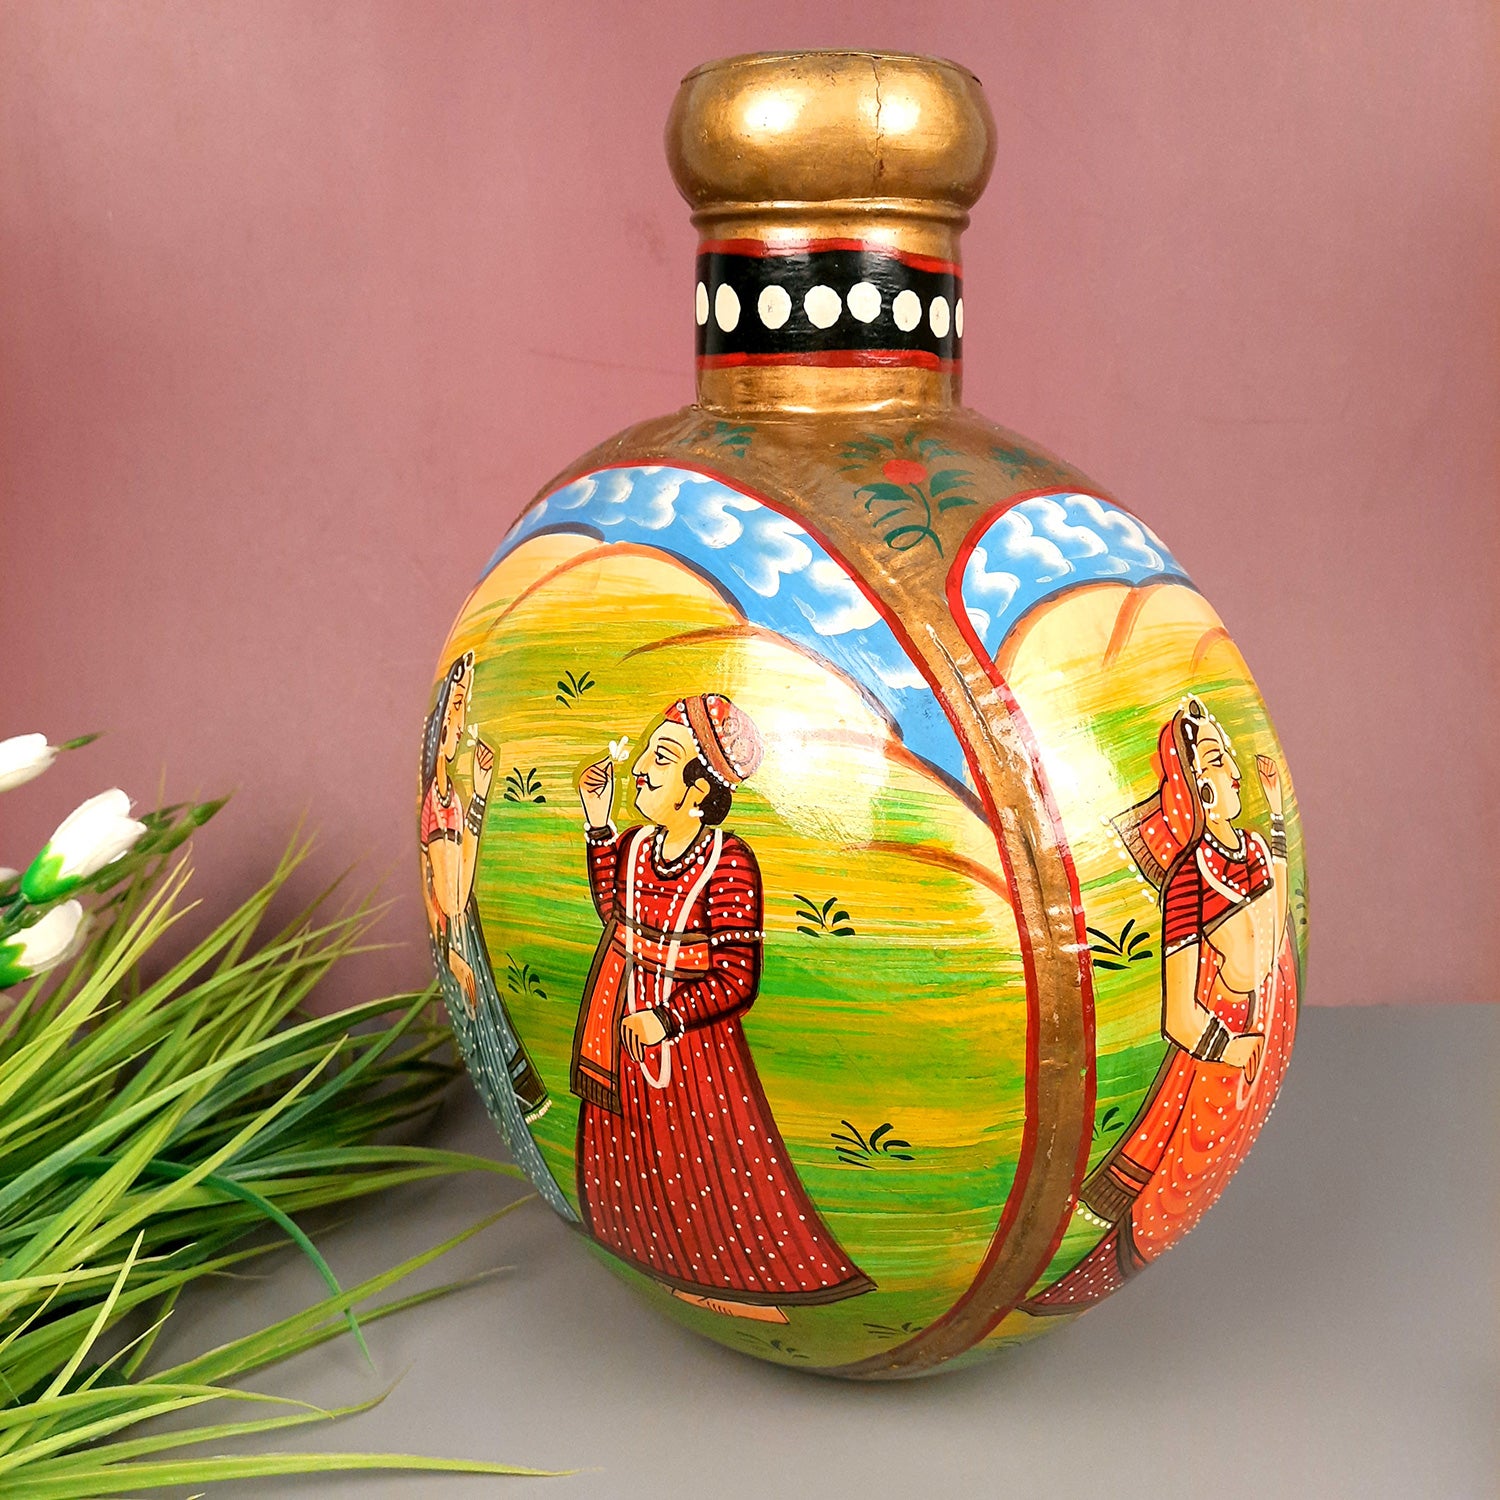 Vase Antique | Flower Pots Handcrafted - For Living room, Table, Corner & Home Decor & Gifts -15 Inch - Apkamart